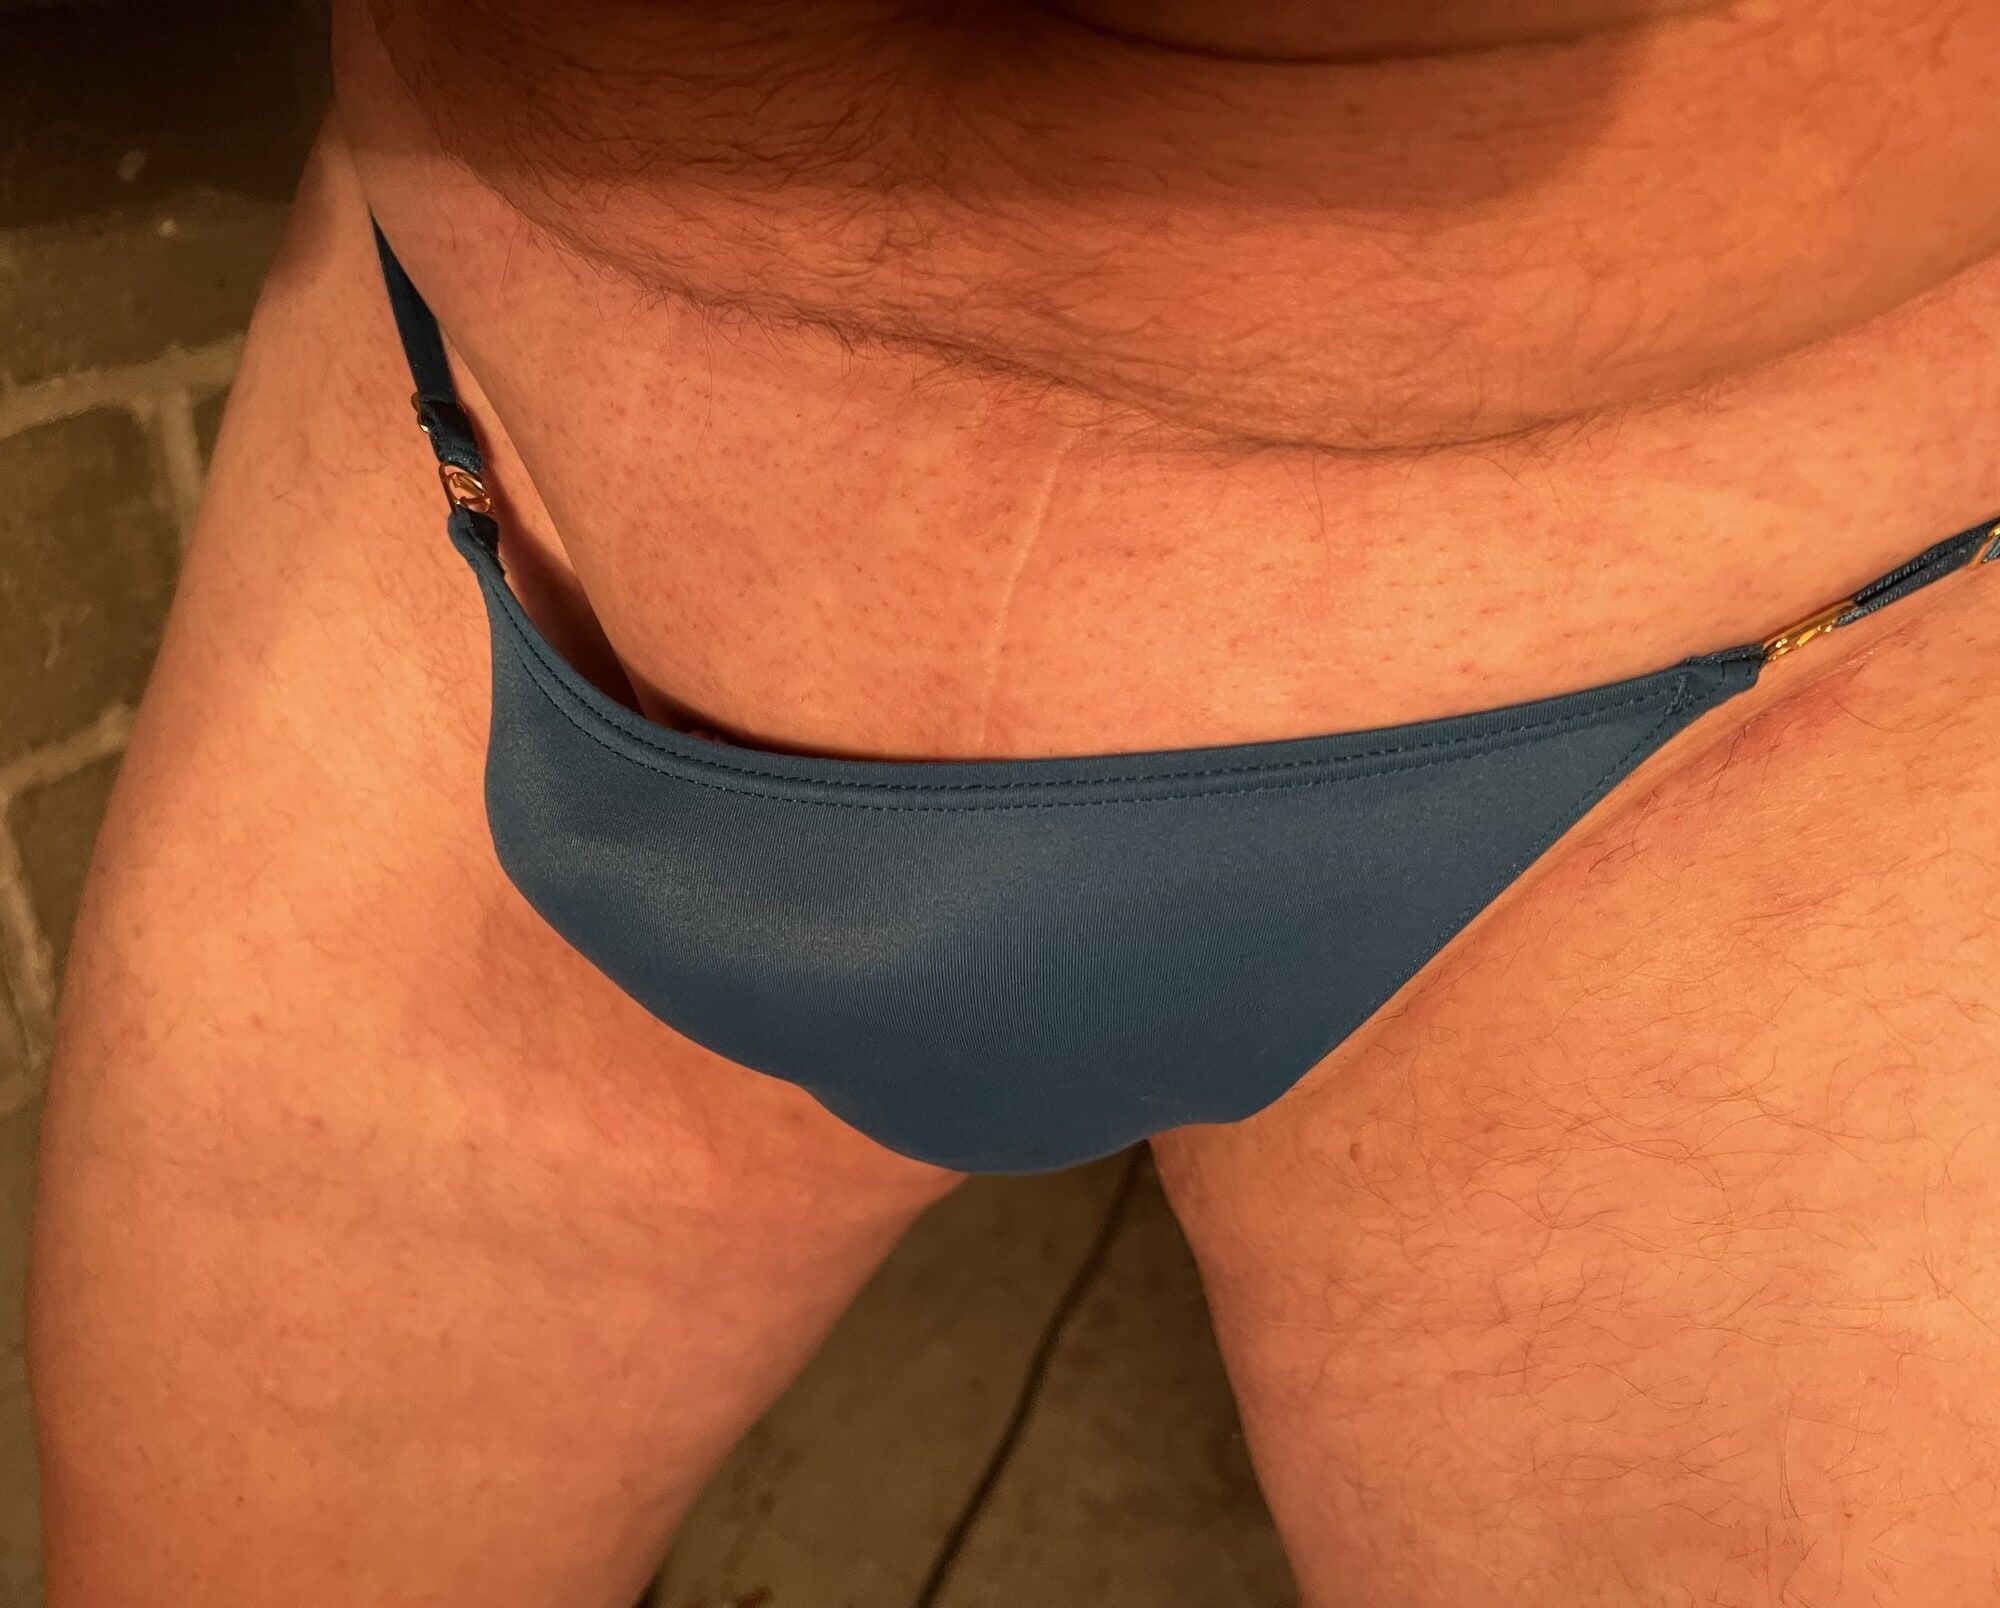 My new panties #38